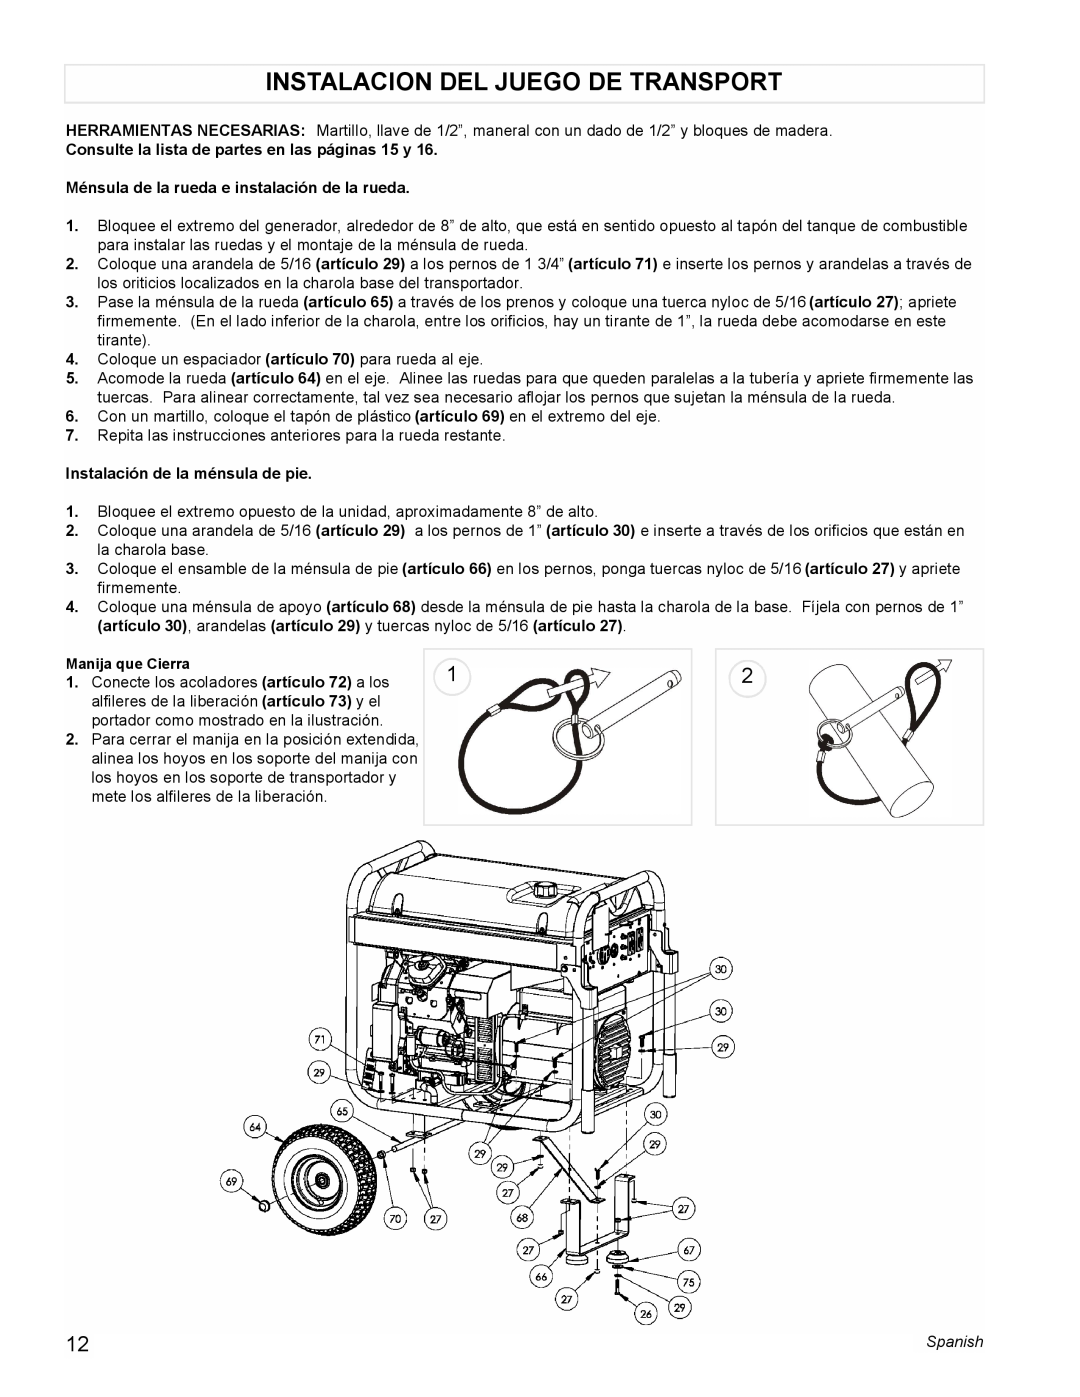 Coleman PM0601100 manual Instalacion Del Juego De Transport, Consulte la lista de partes en las páginas 15 y 